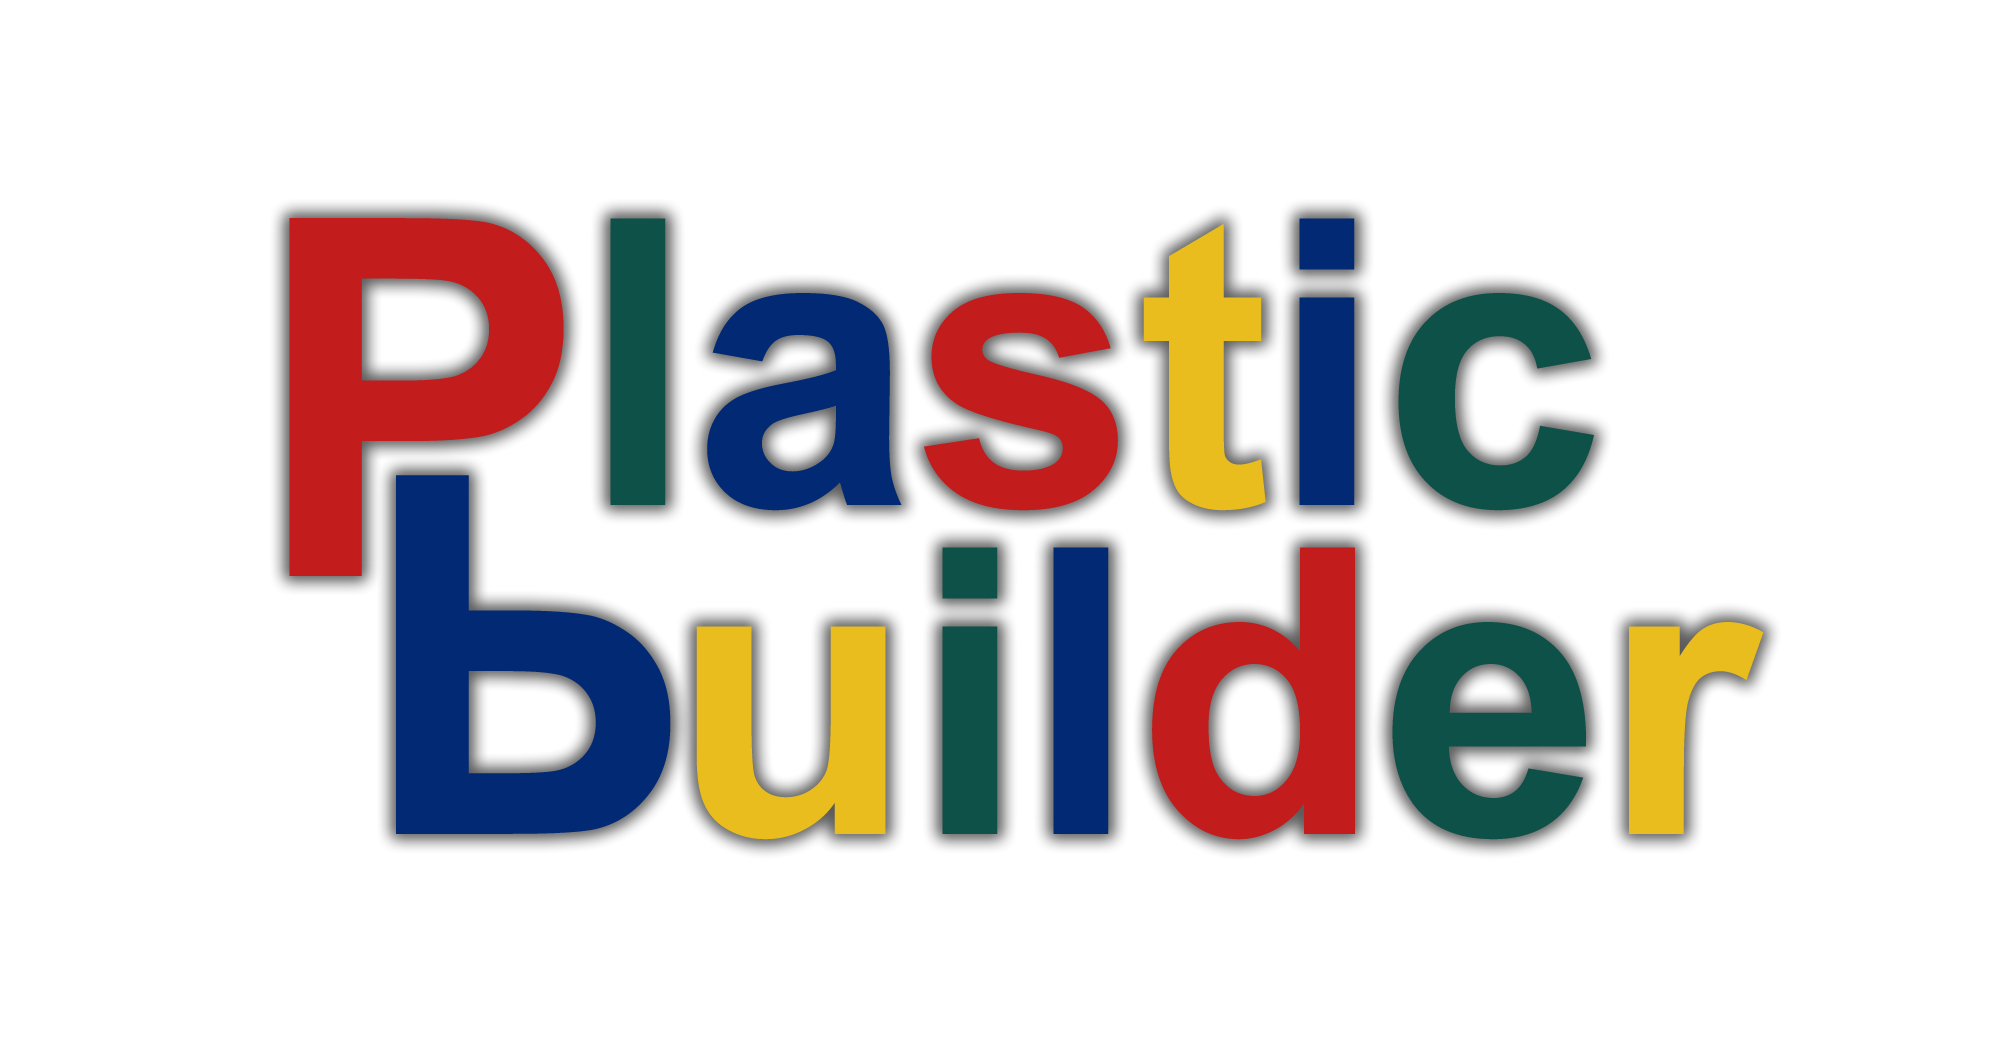 PlasticBuilder.com